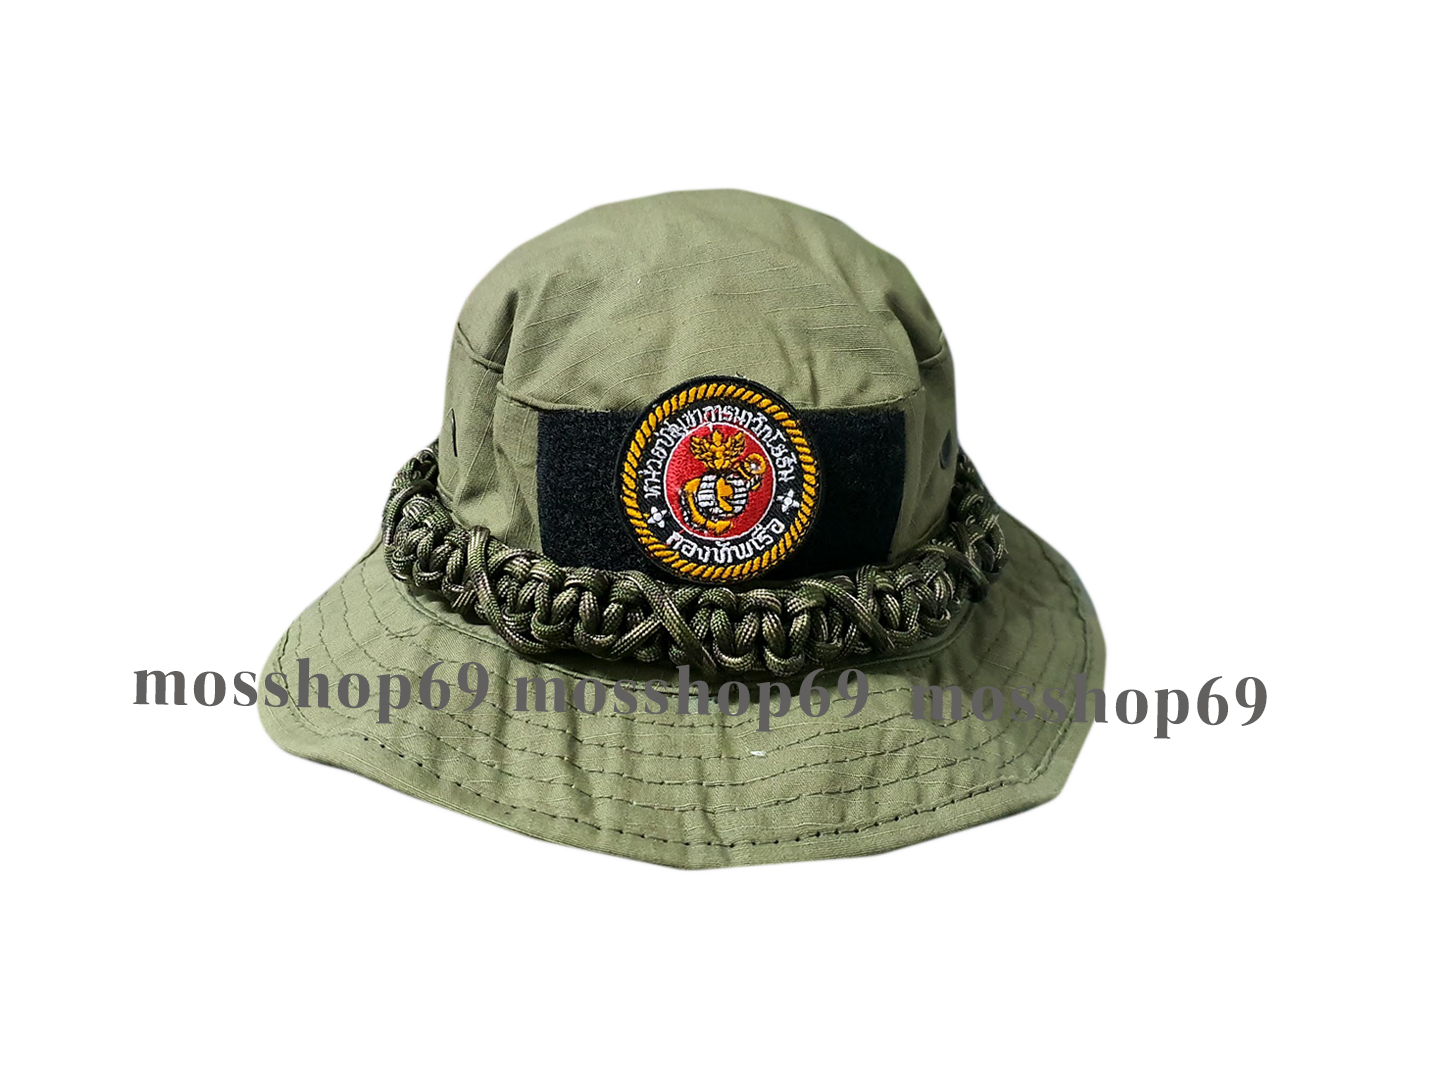 หมวกปีกทหาร หมวกปีกทหารโลโก้หน่วยนิวิกโยธิน หมวกปีกกว้าง หมวกเดินป่า หมวกลายพราง หมวกกันแดด หมวกทหารเรือ หมวกทหารไทย หมวกผู้ชาย  รอบหัว 59-60 ซม. ถักเชือก